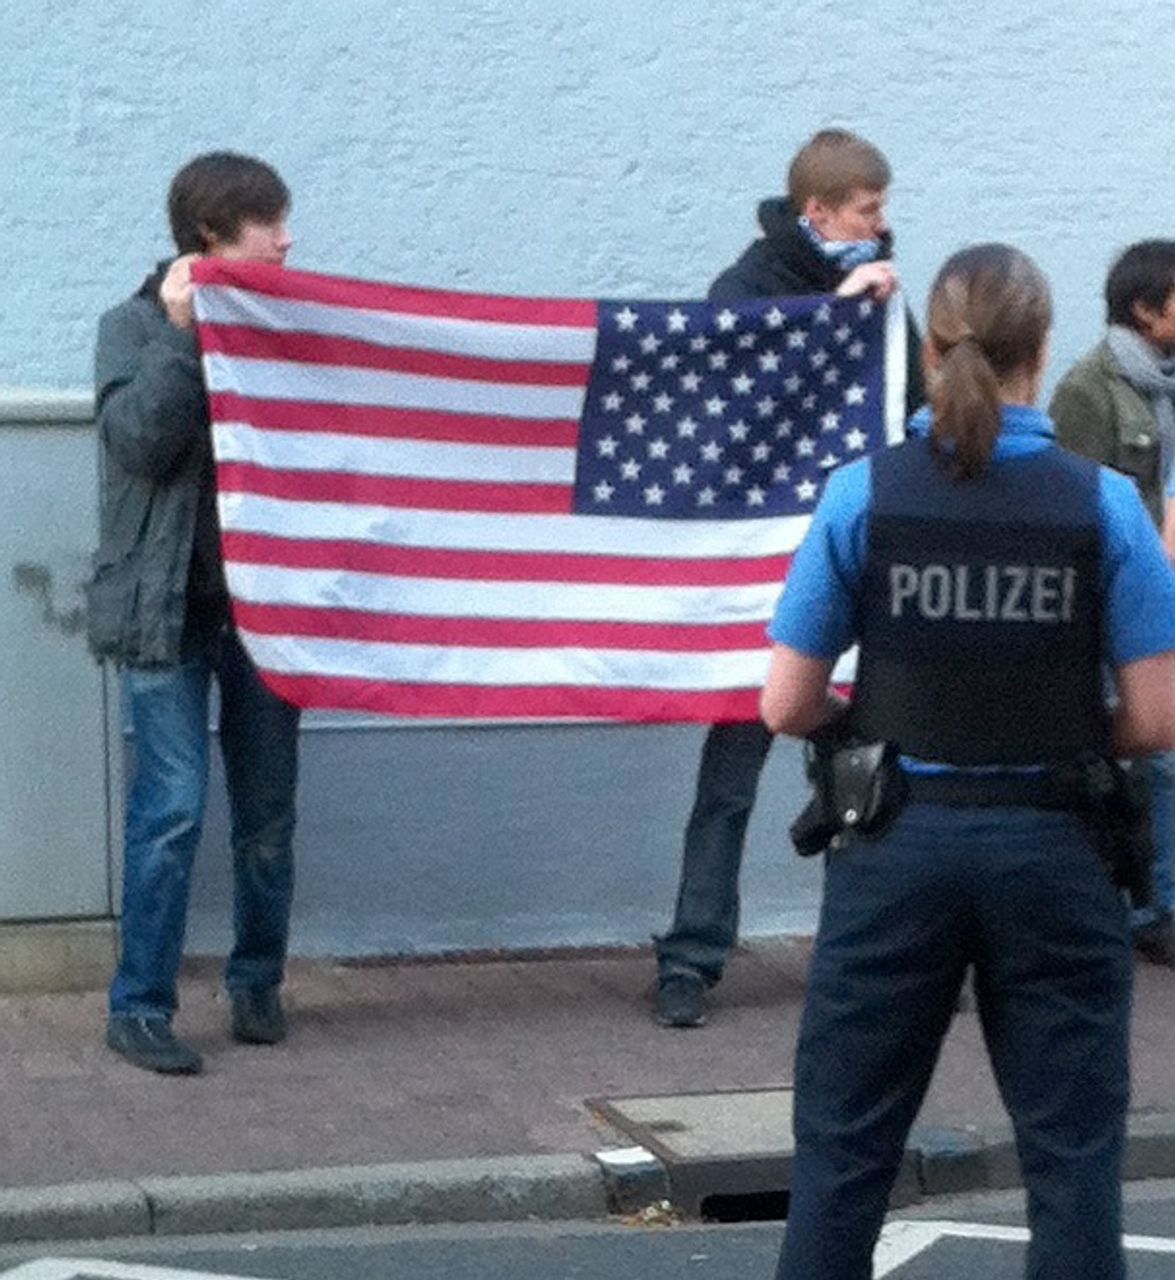 Störer mit amerikanischer Flagge nach Eintreffen der Polizei